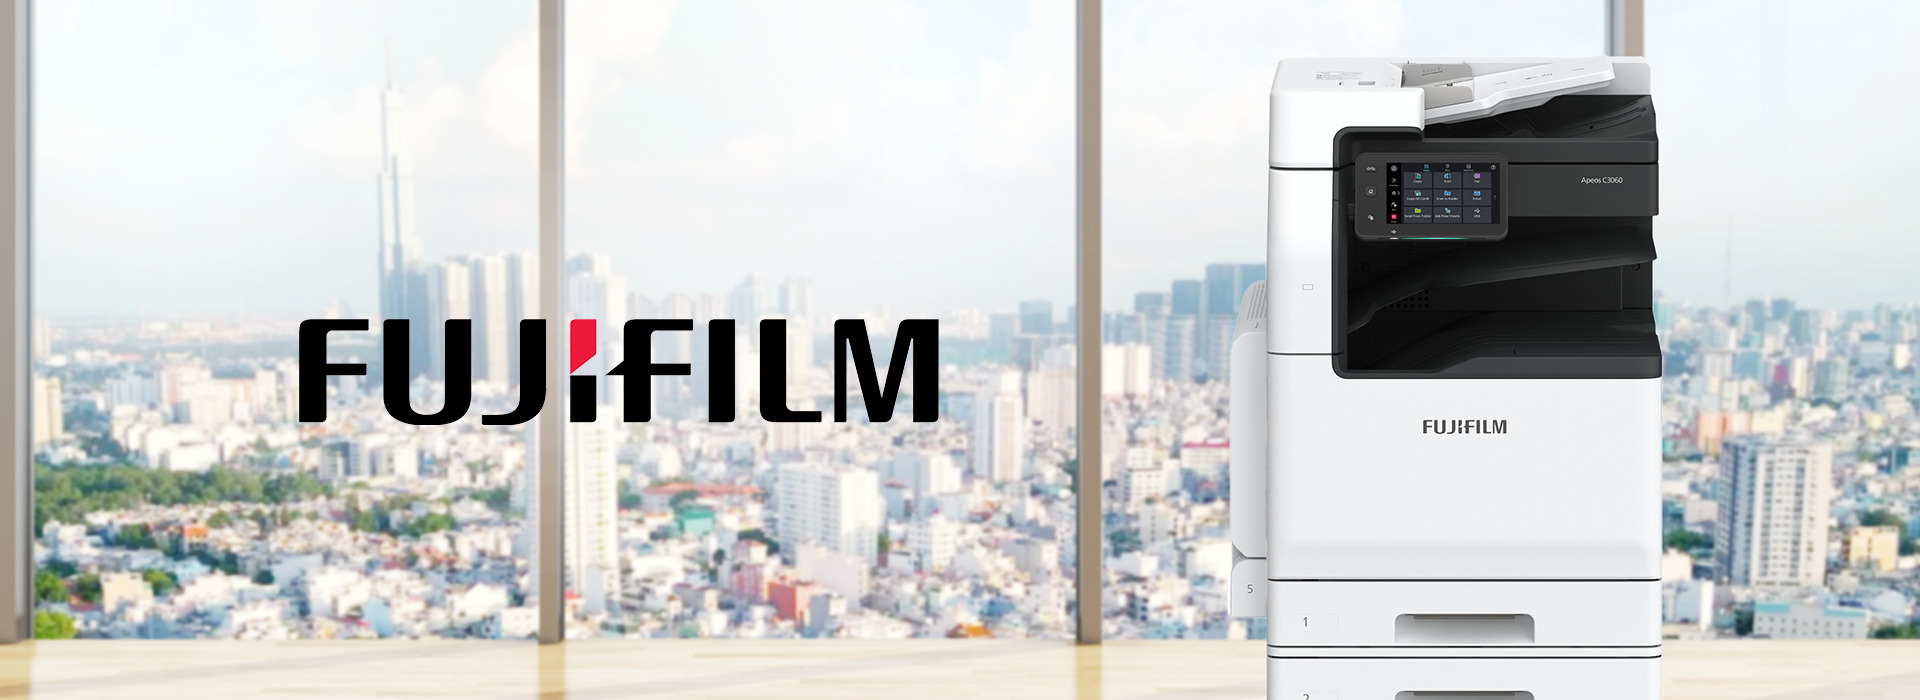 FujiFilm b2b marketing 